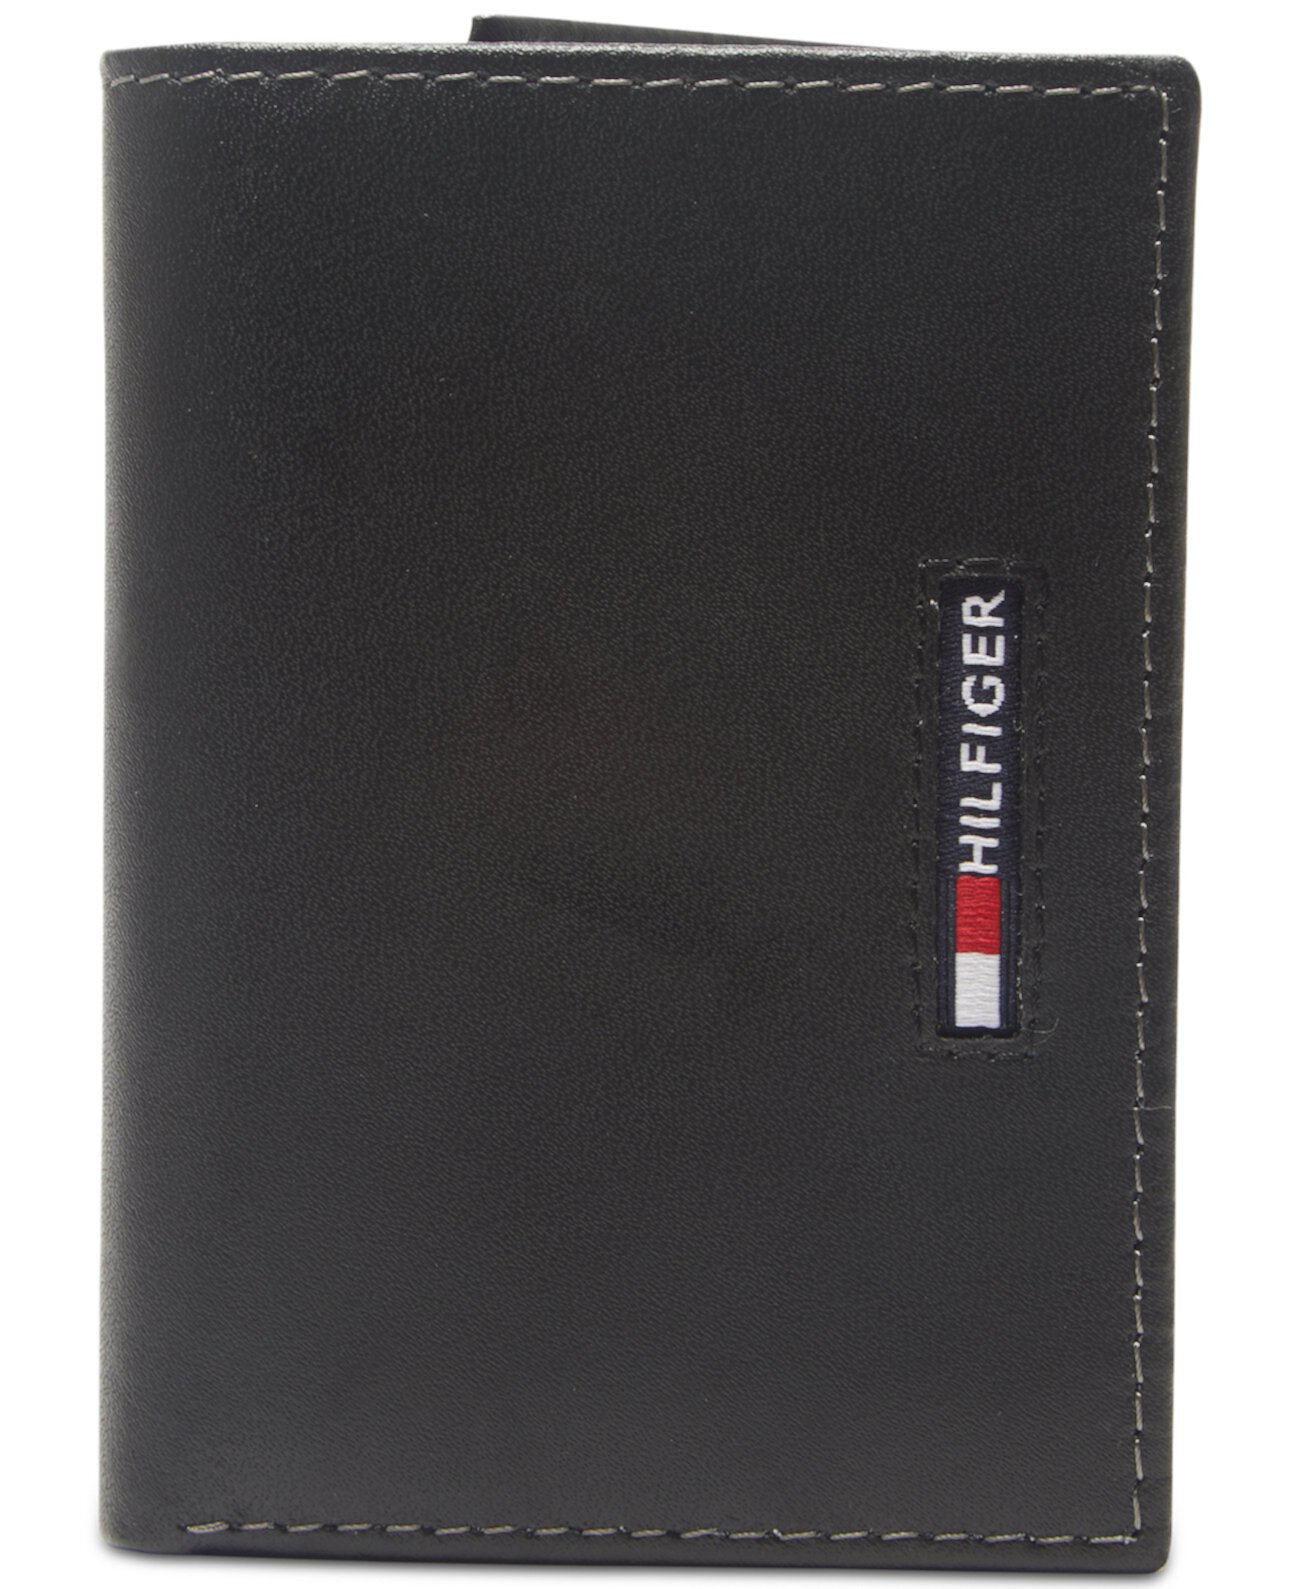 Мужской кожаный бумажник с RFID-метками, сложенный втрое, увеличенной емкости Tommy Hilfiger